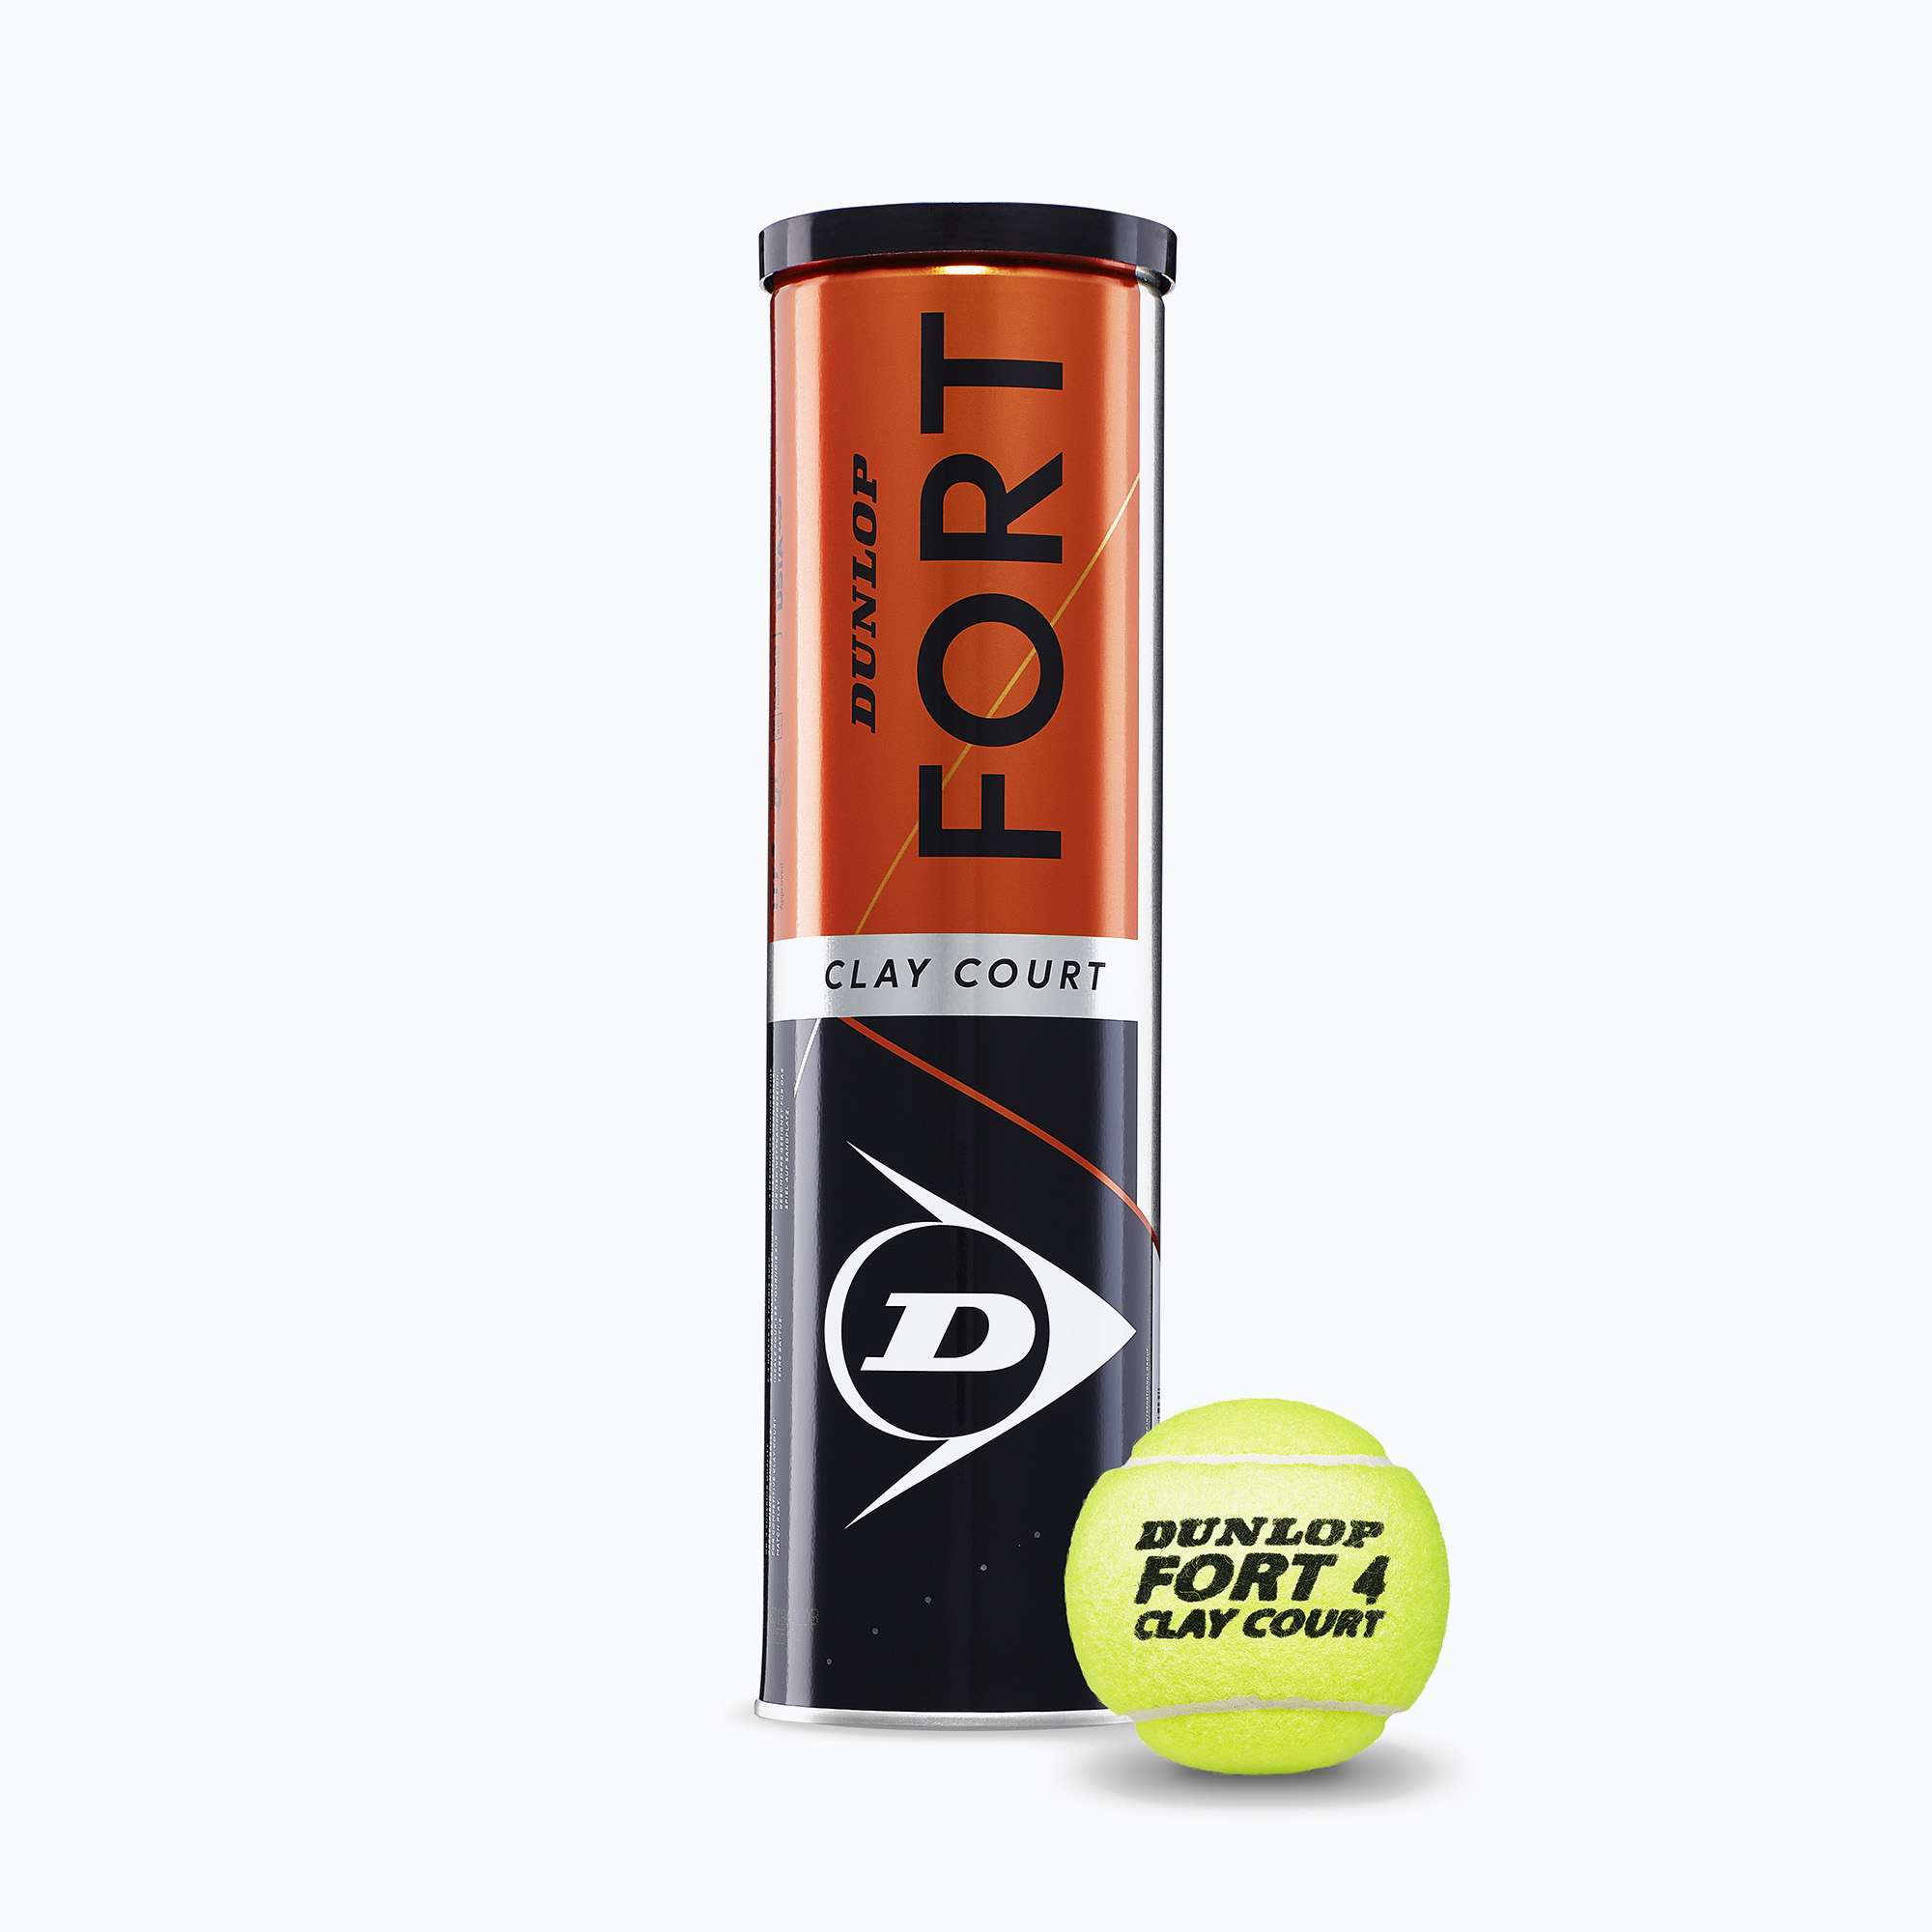 Dunlop Fort Clay Court топки за тенис 4B 18 x 4 бр. жълти 601318